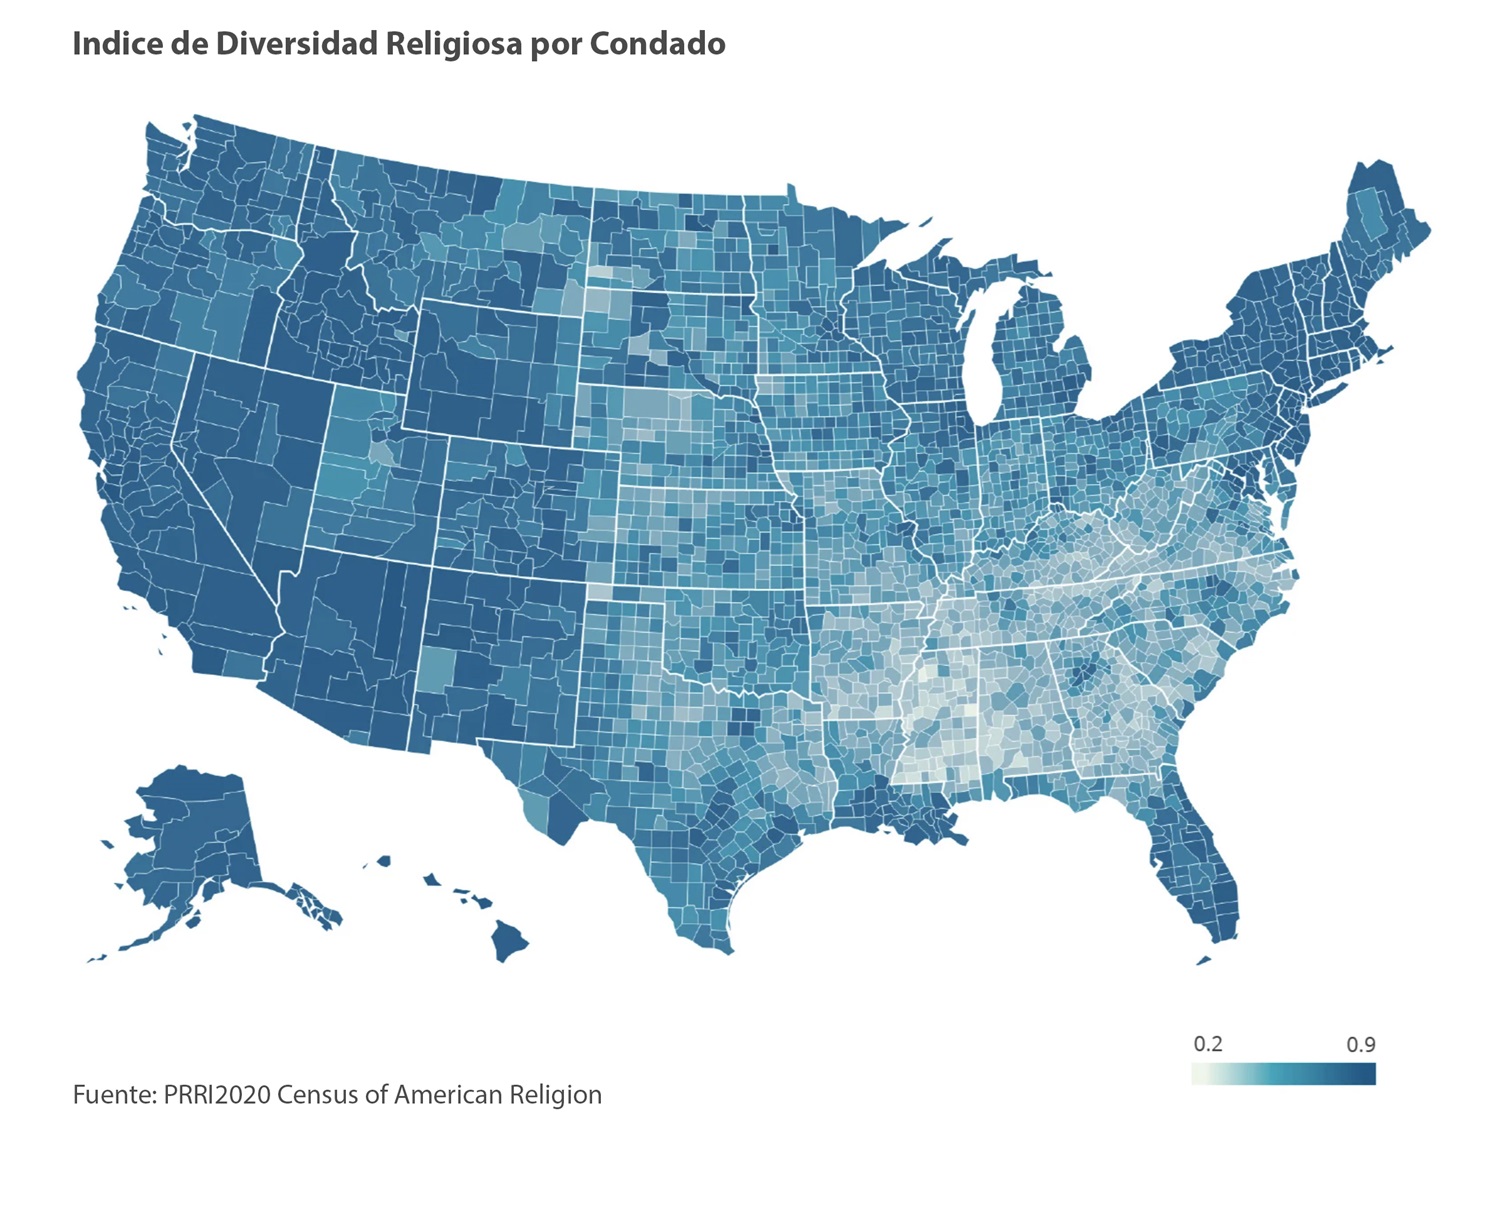 Gráfico cortesía de PRRI Census of American Religion.